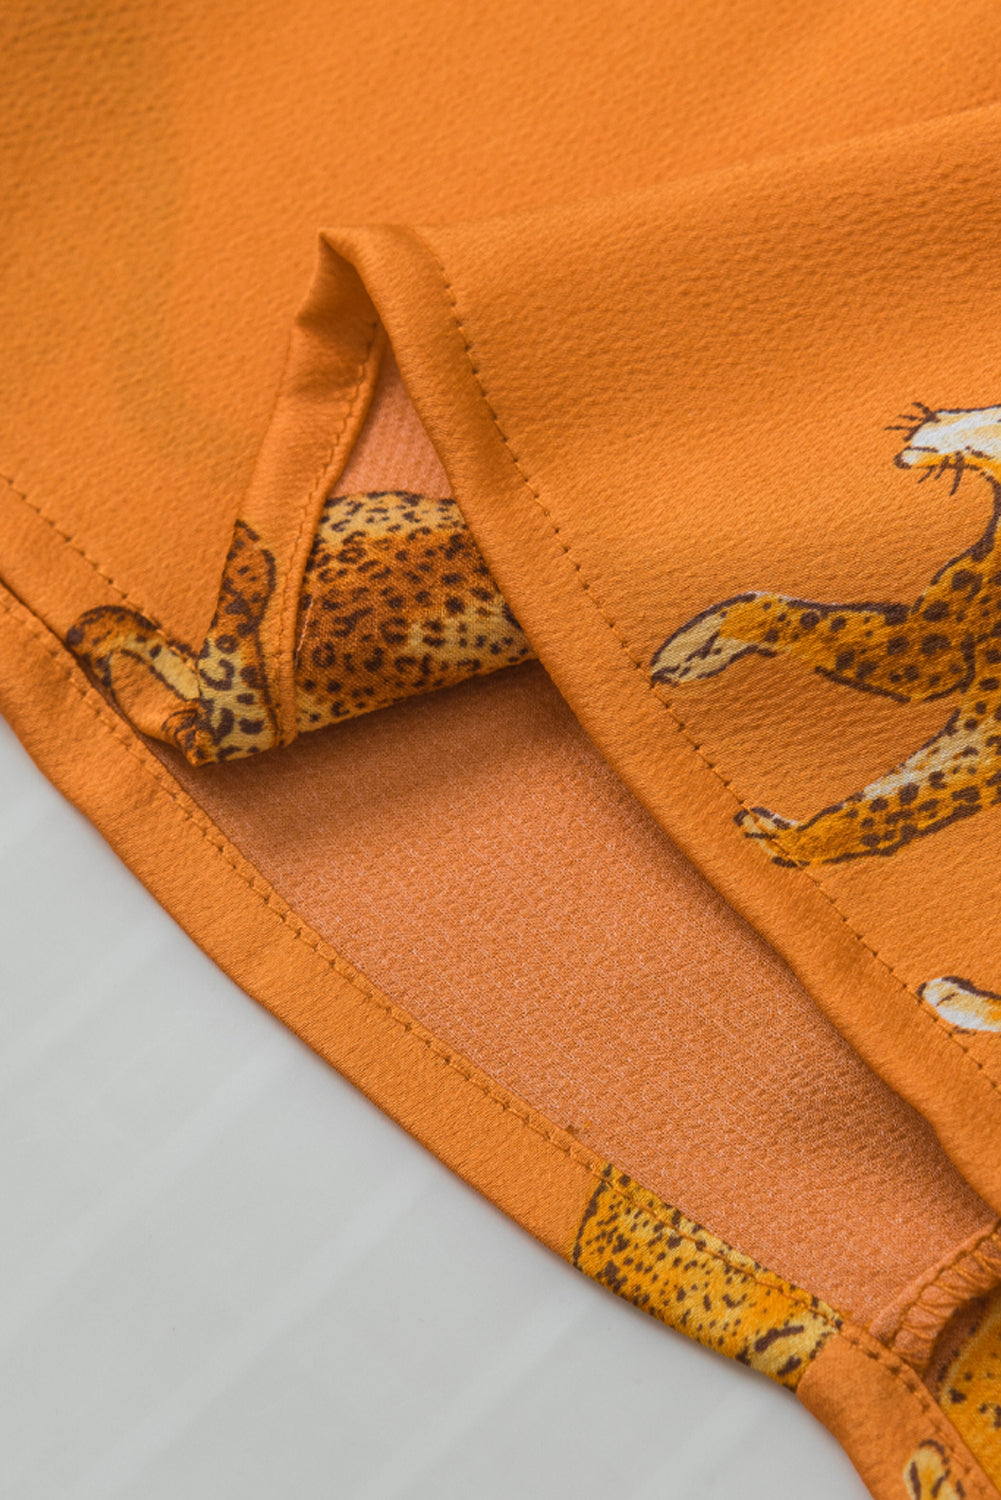 Orangefarbene Bluse mit Gepardenmuster und Rüschenärmeln